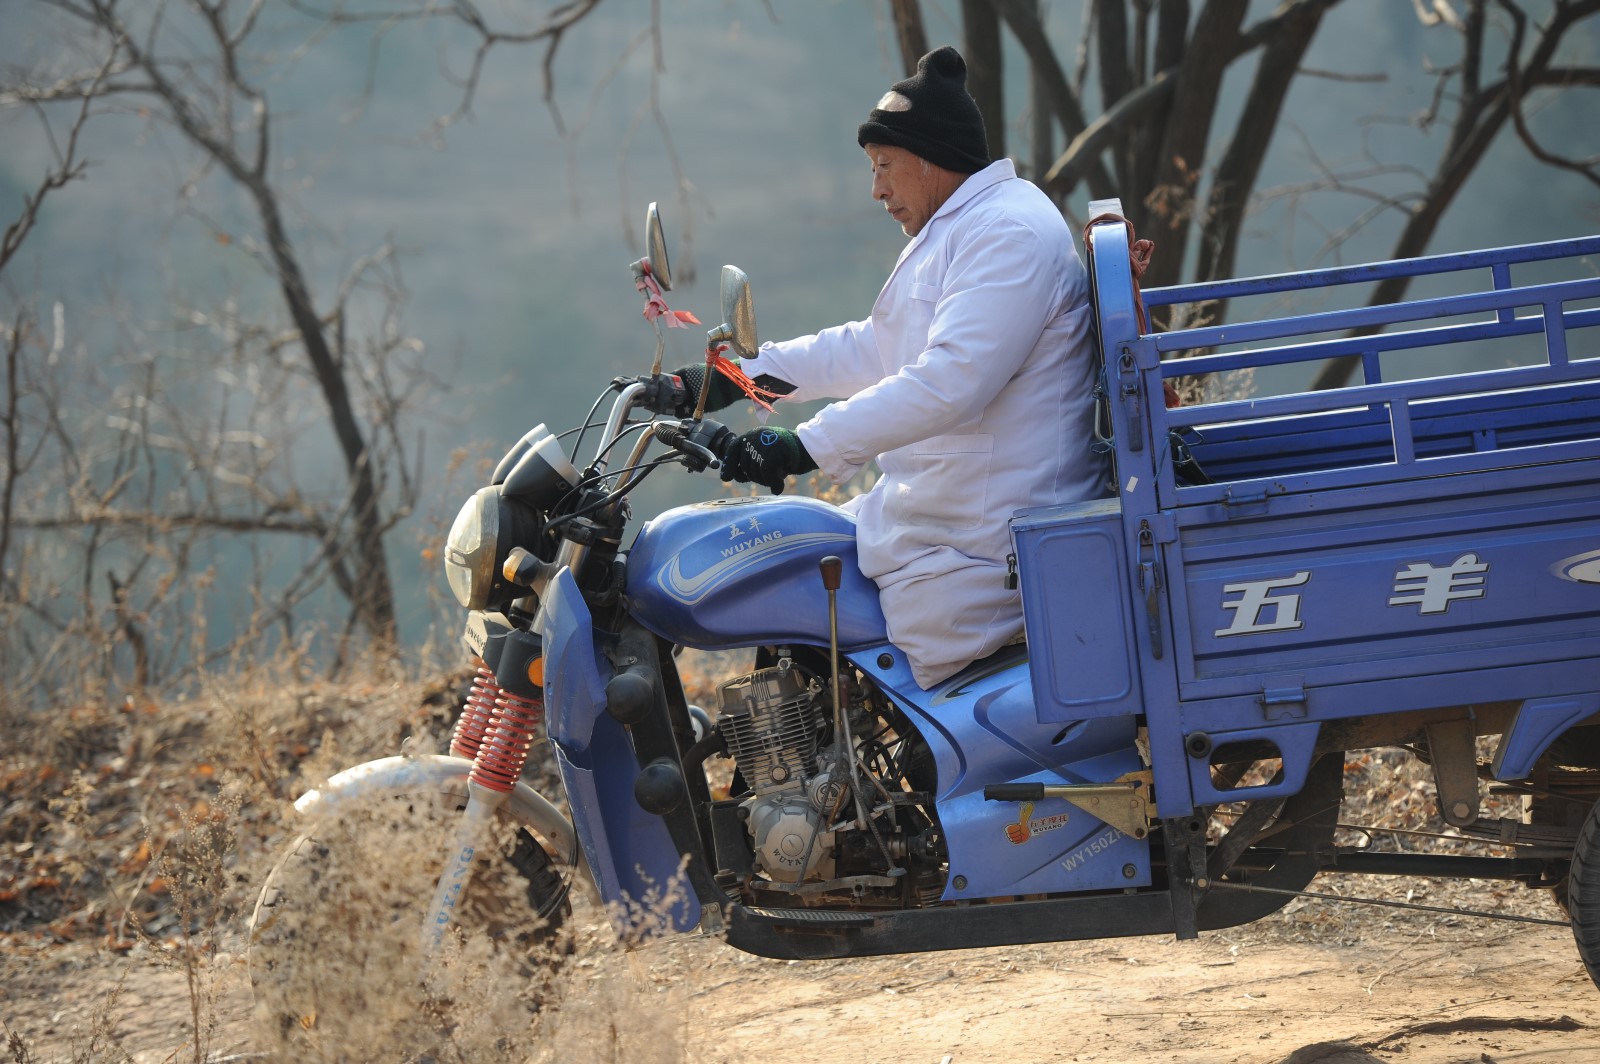 1996年,李拴州买了一辆摩托三轮车,外出行医方便了很多